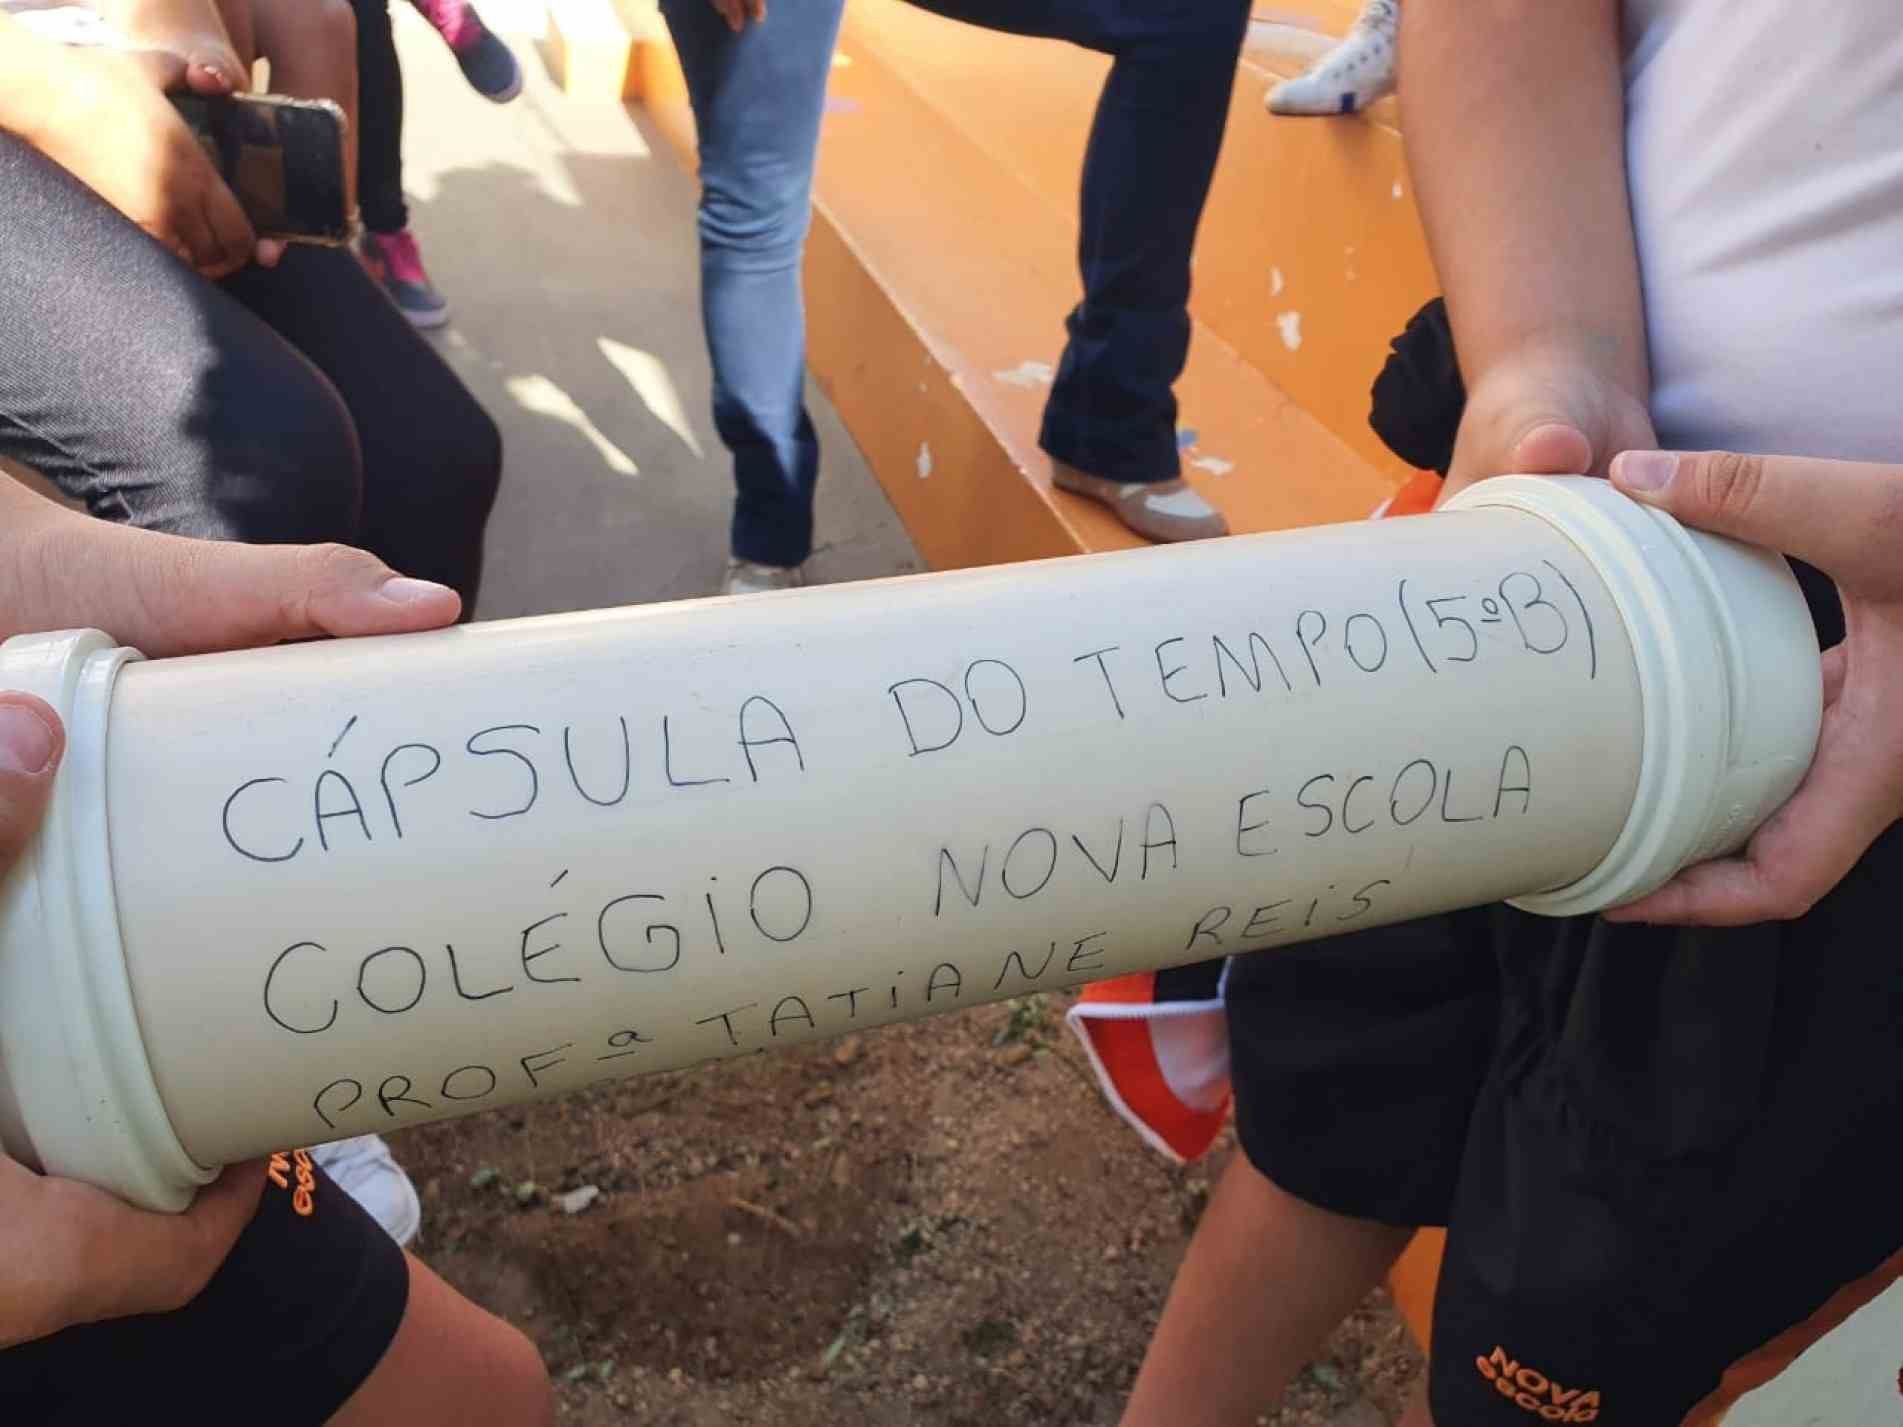 A cápsula é feita de um um tubo de PVC e reúne memórias que marcaram a quarentena: fotos, cartinhas, máscaras, memes e até um exemplar do jornal Cruzeiro do Sul.